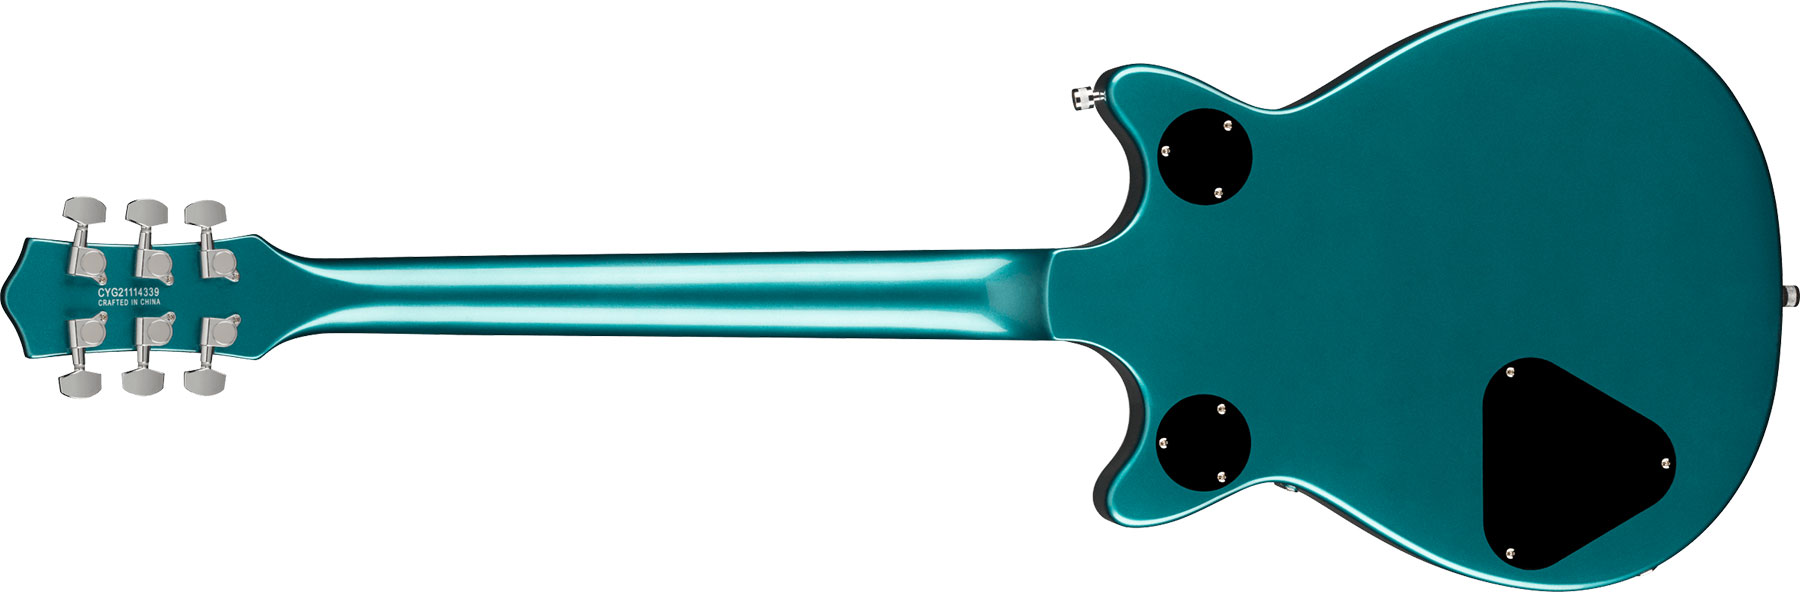 Gretsch G5222 Electromatic Double Jet Bt V-stoptail Hh Ht Lau - Ocean Turquoise - Guitarra eléctrica de doble corte. - Variation 1